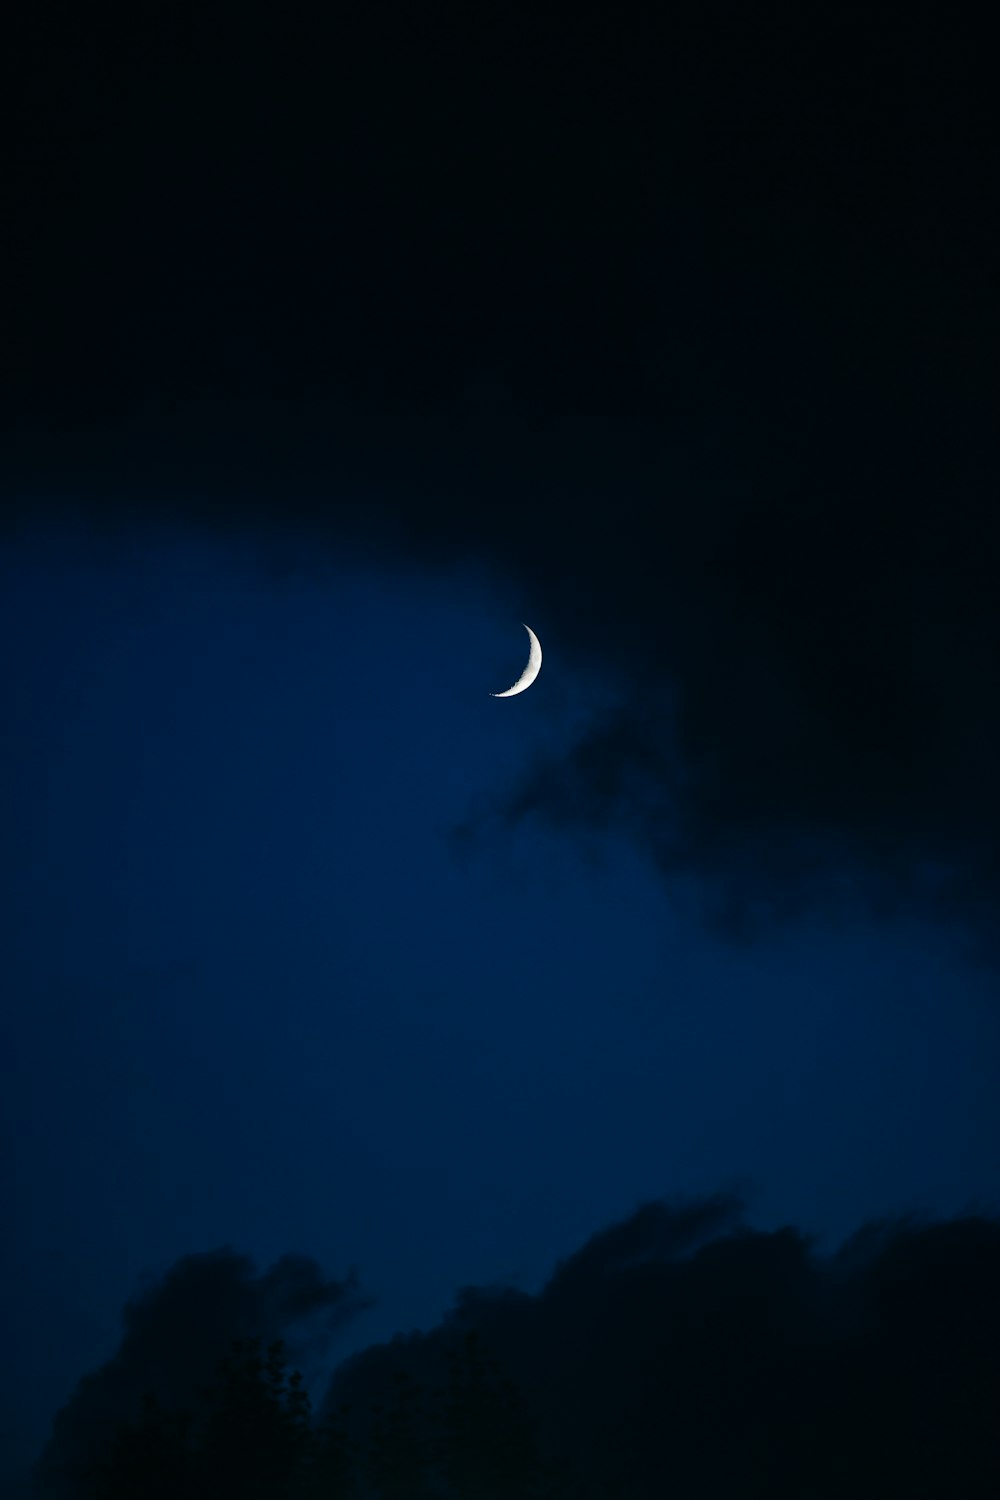 La luna è vista attraverso le nuvole scure